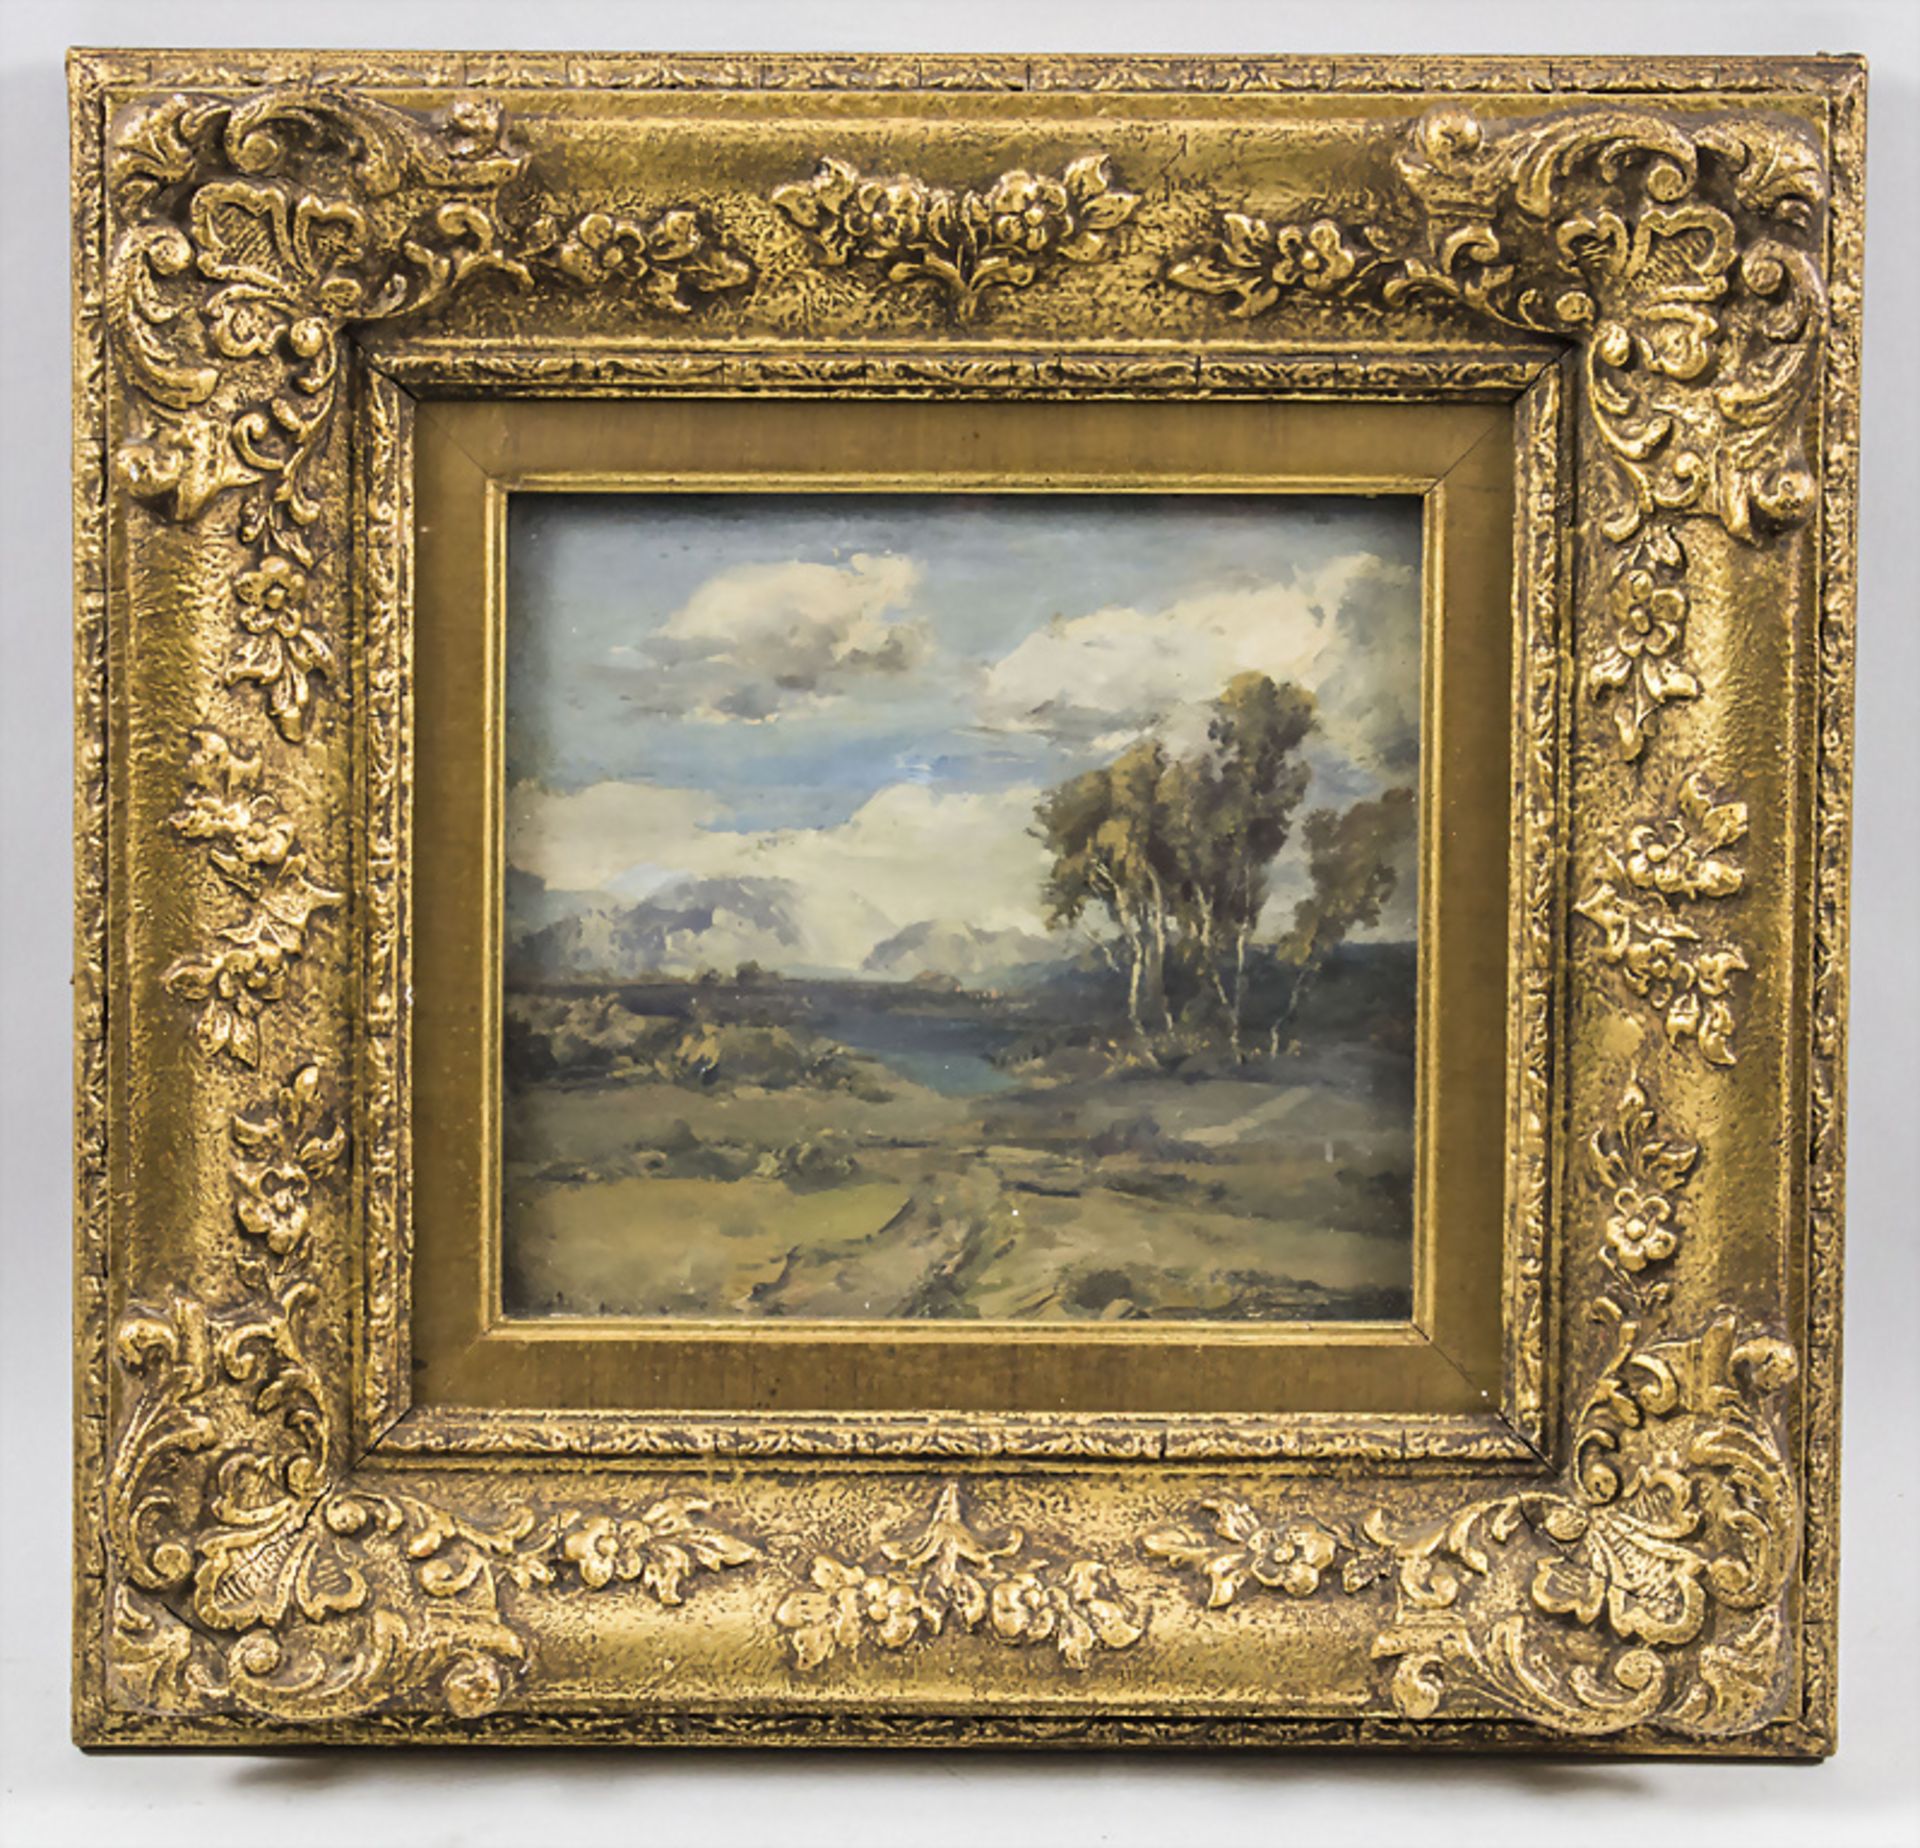 Max HARTWIG (1873-1939), 'Oberbayrische Landschaftsansicht' / 'Bavarian landscape view', nach 1900 - Bild 2 aus 4